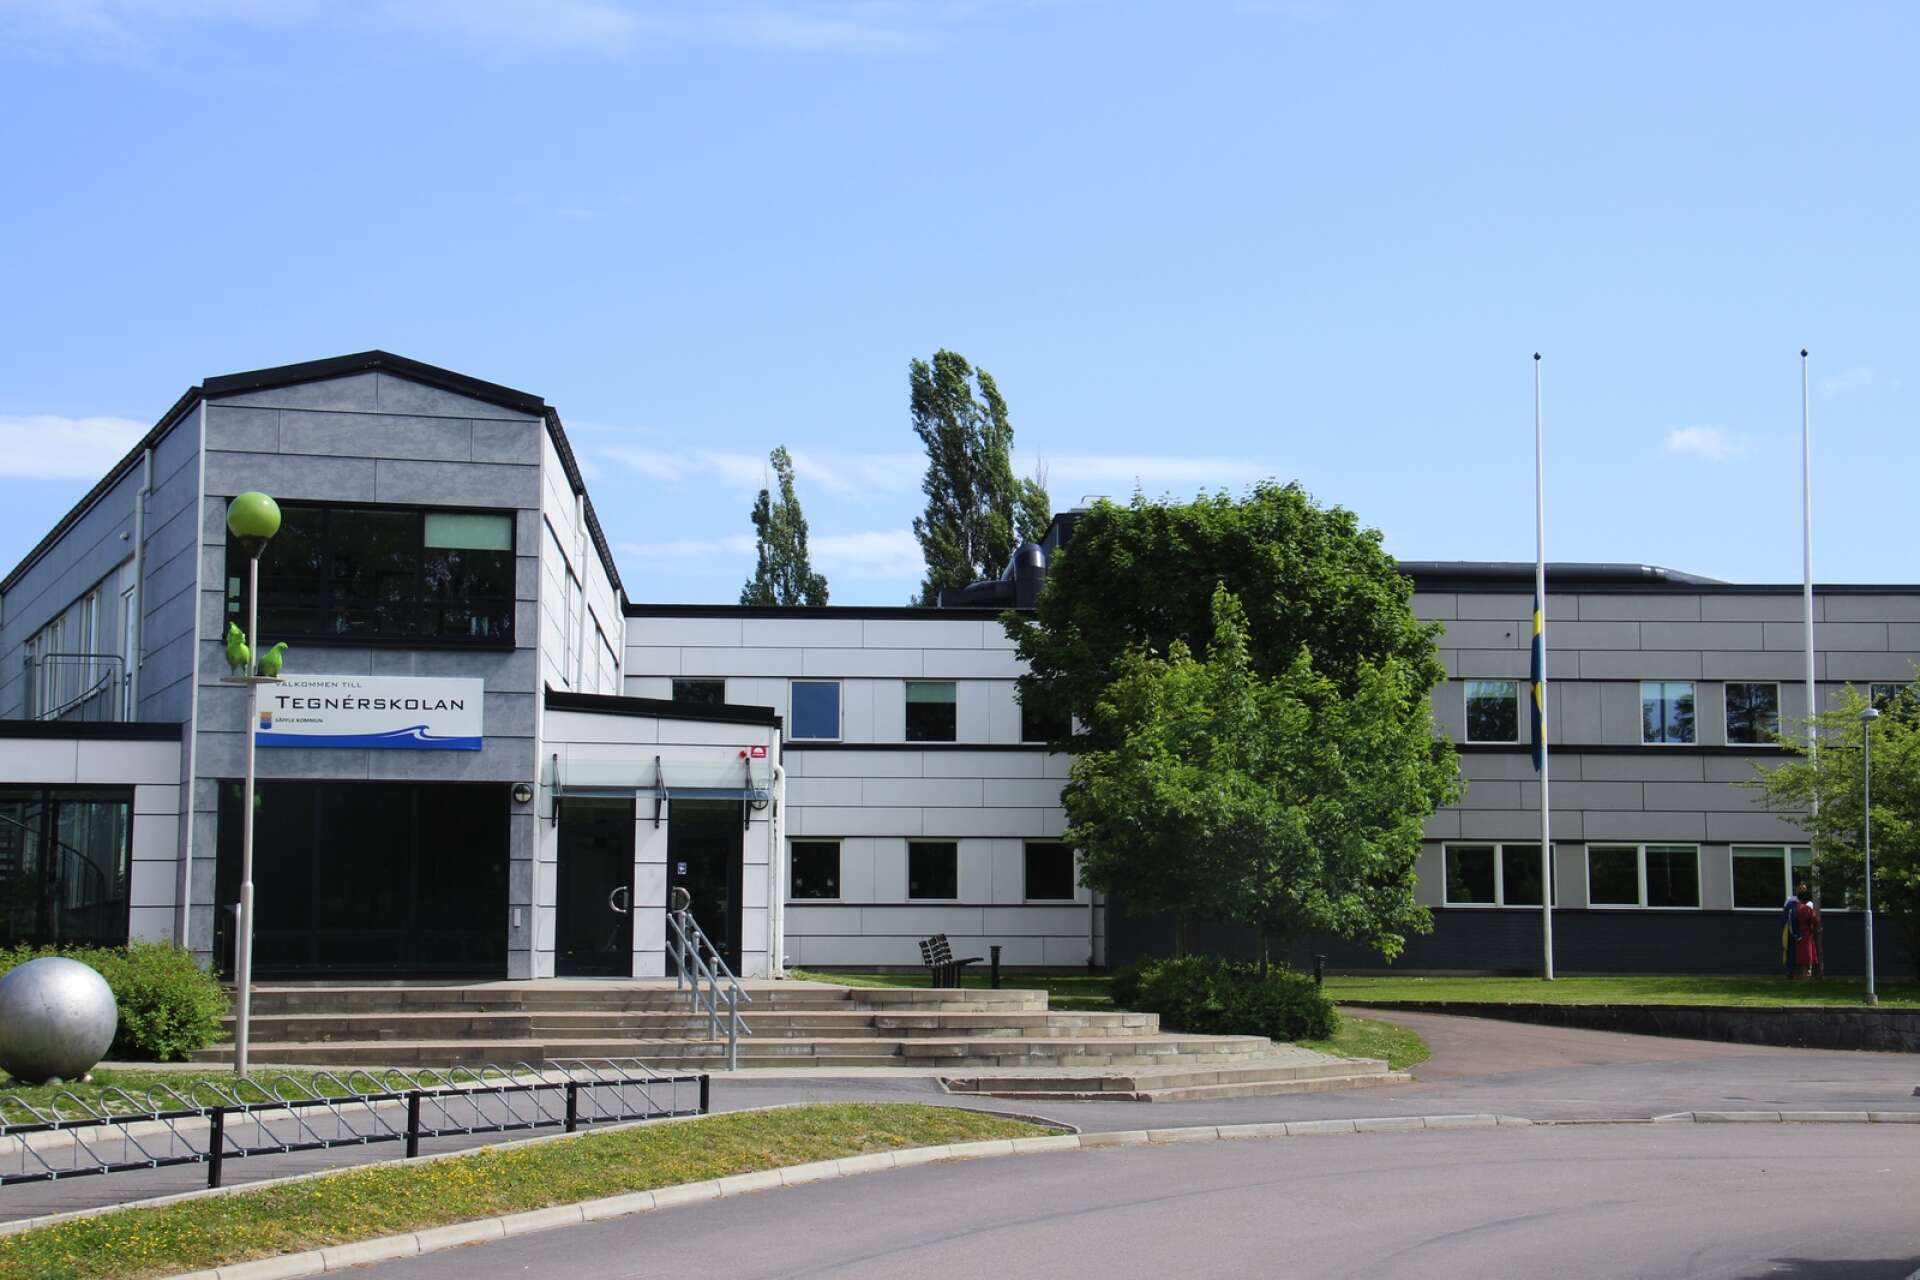 En skåpbil började brinna inne på skolområdet tillhörande Tegnérskolan i Säffle.